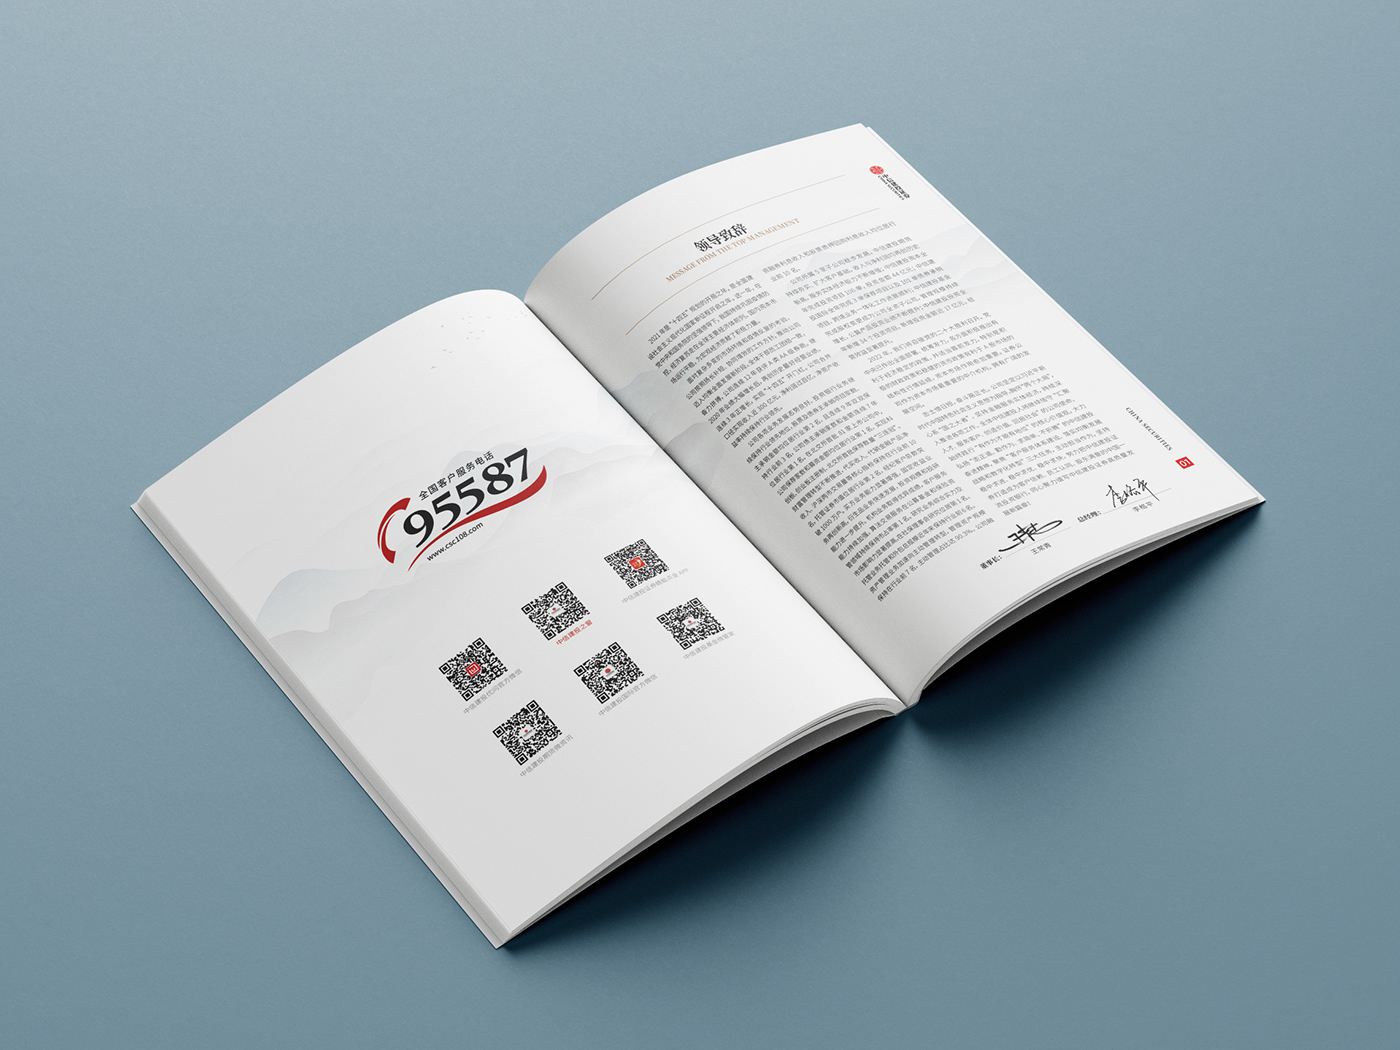 中国风画册 企业画册 宣传册 平面设计 手册 排版 版式设计 画册 画册设计